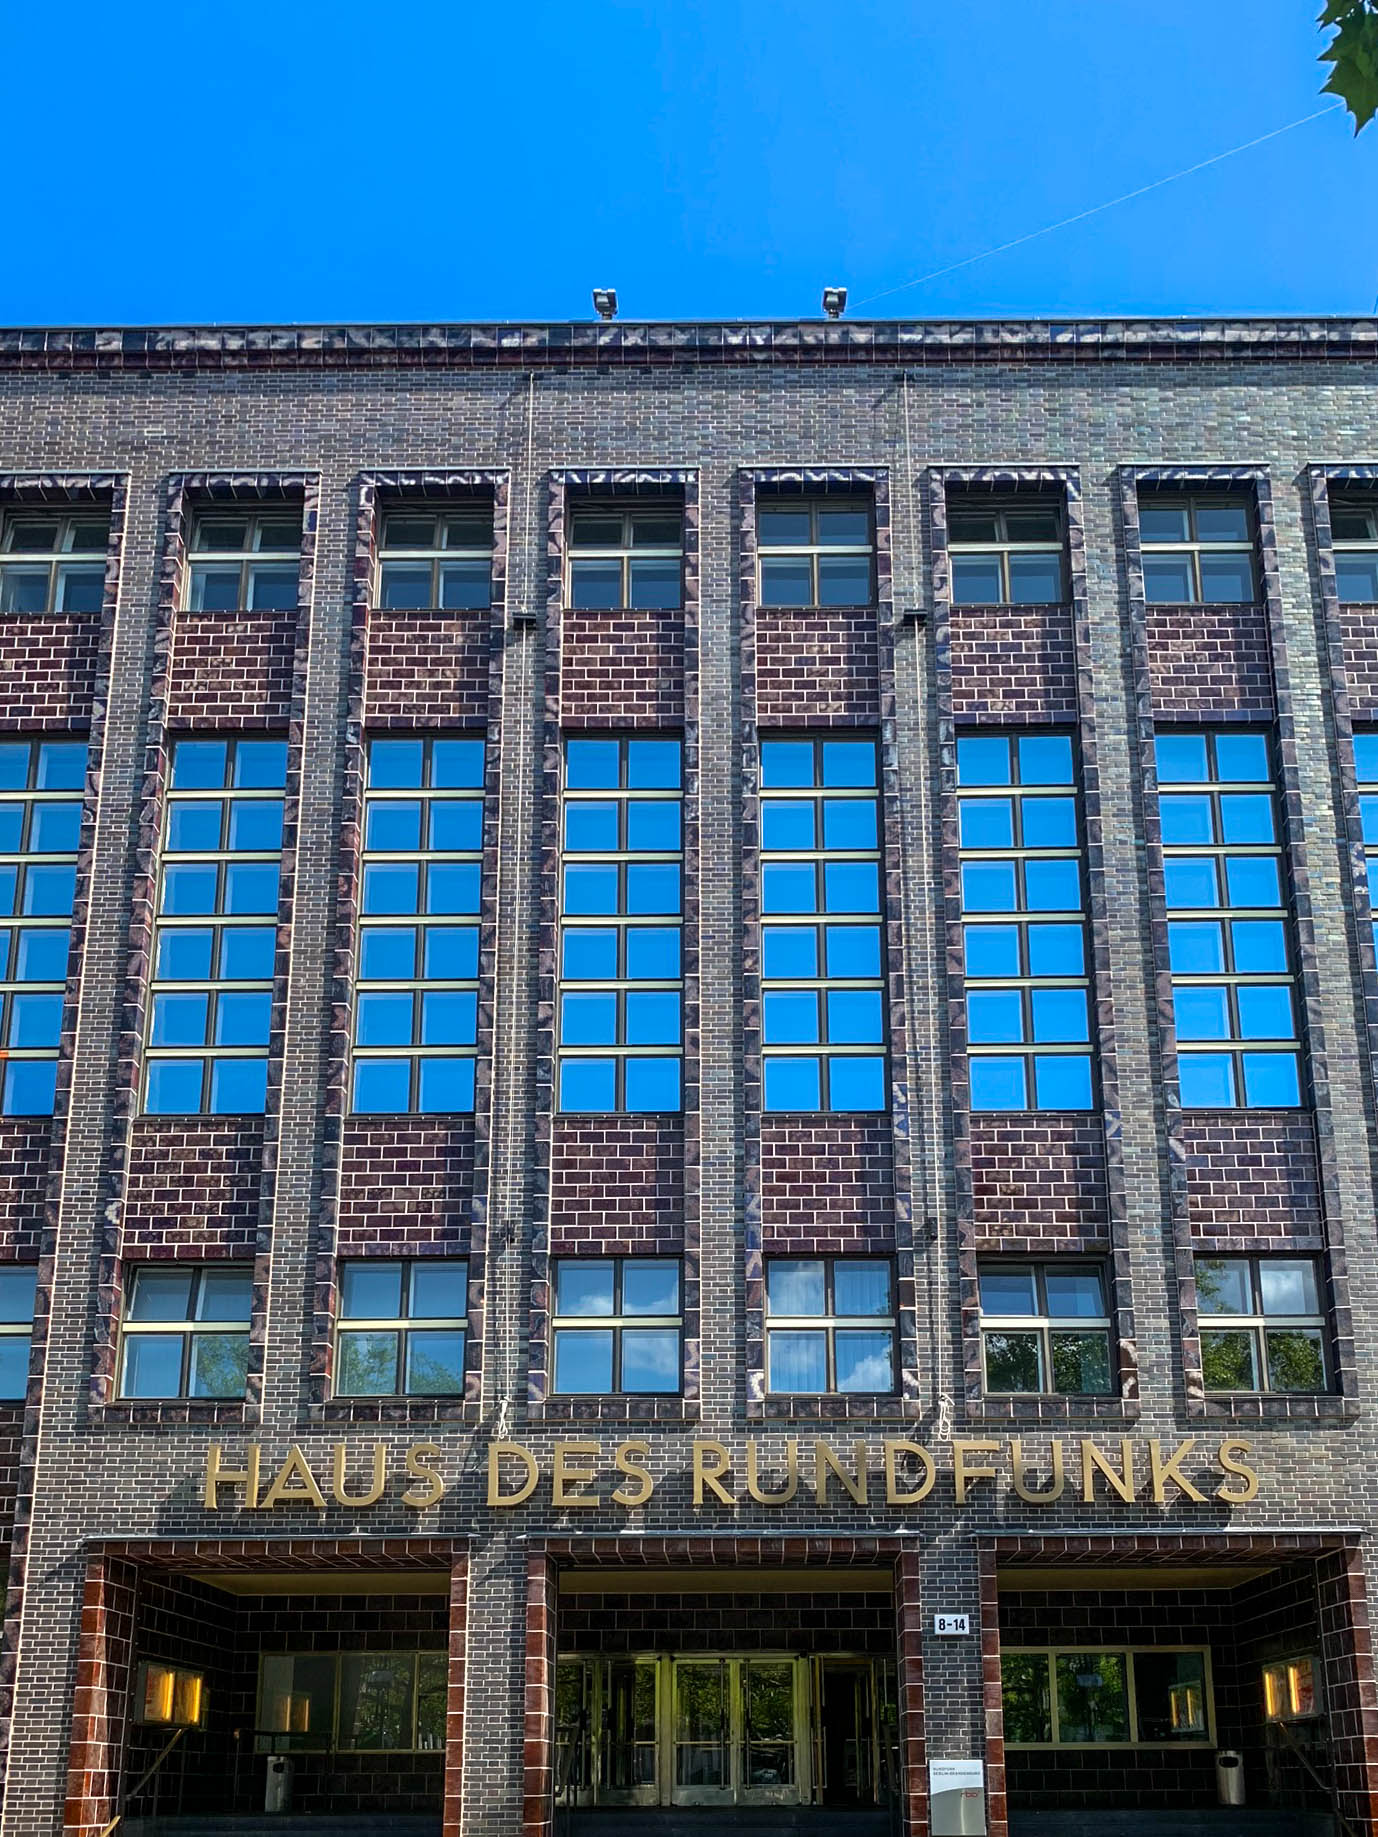 Haus des Rundfunks, 1929-1931. Architect: Hans Poelzig. Photo: Daniela Christmann